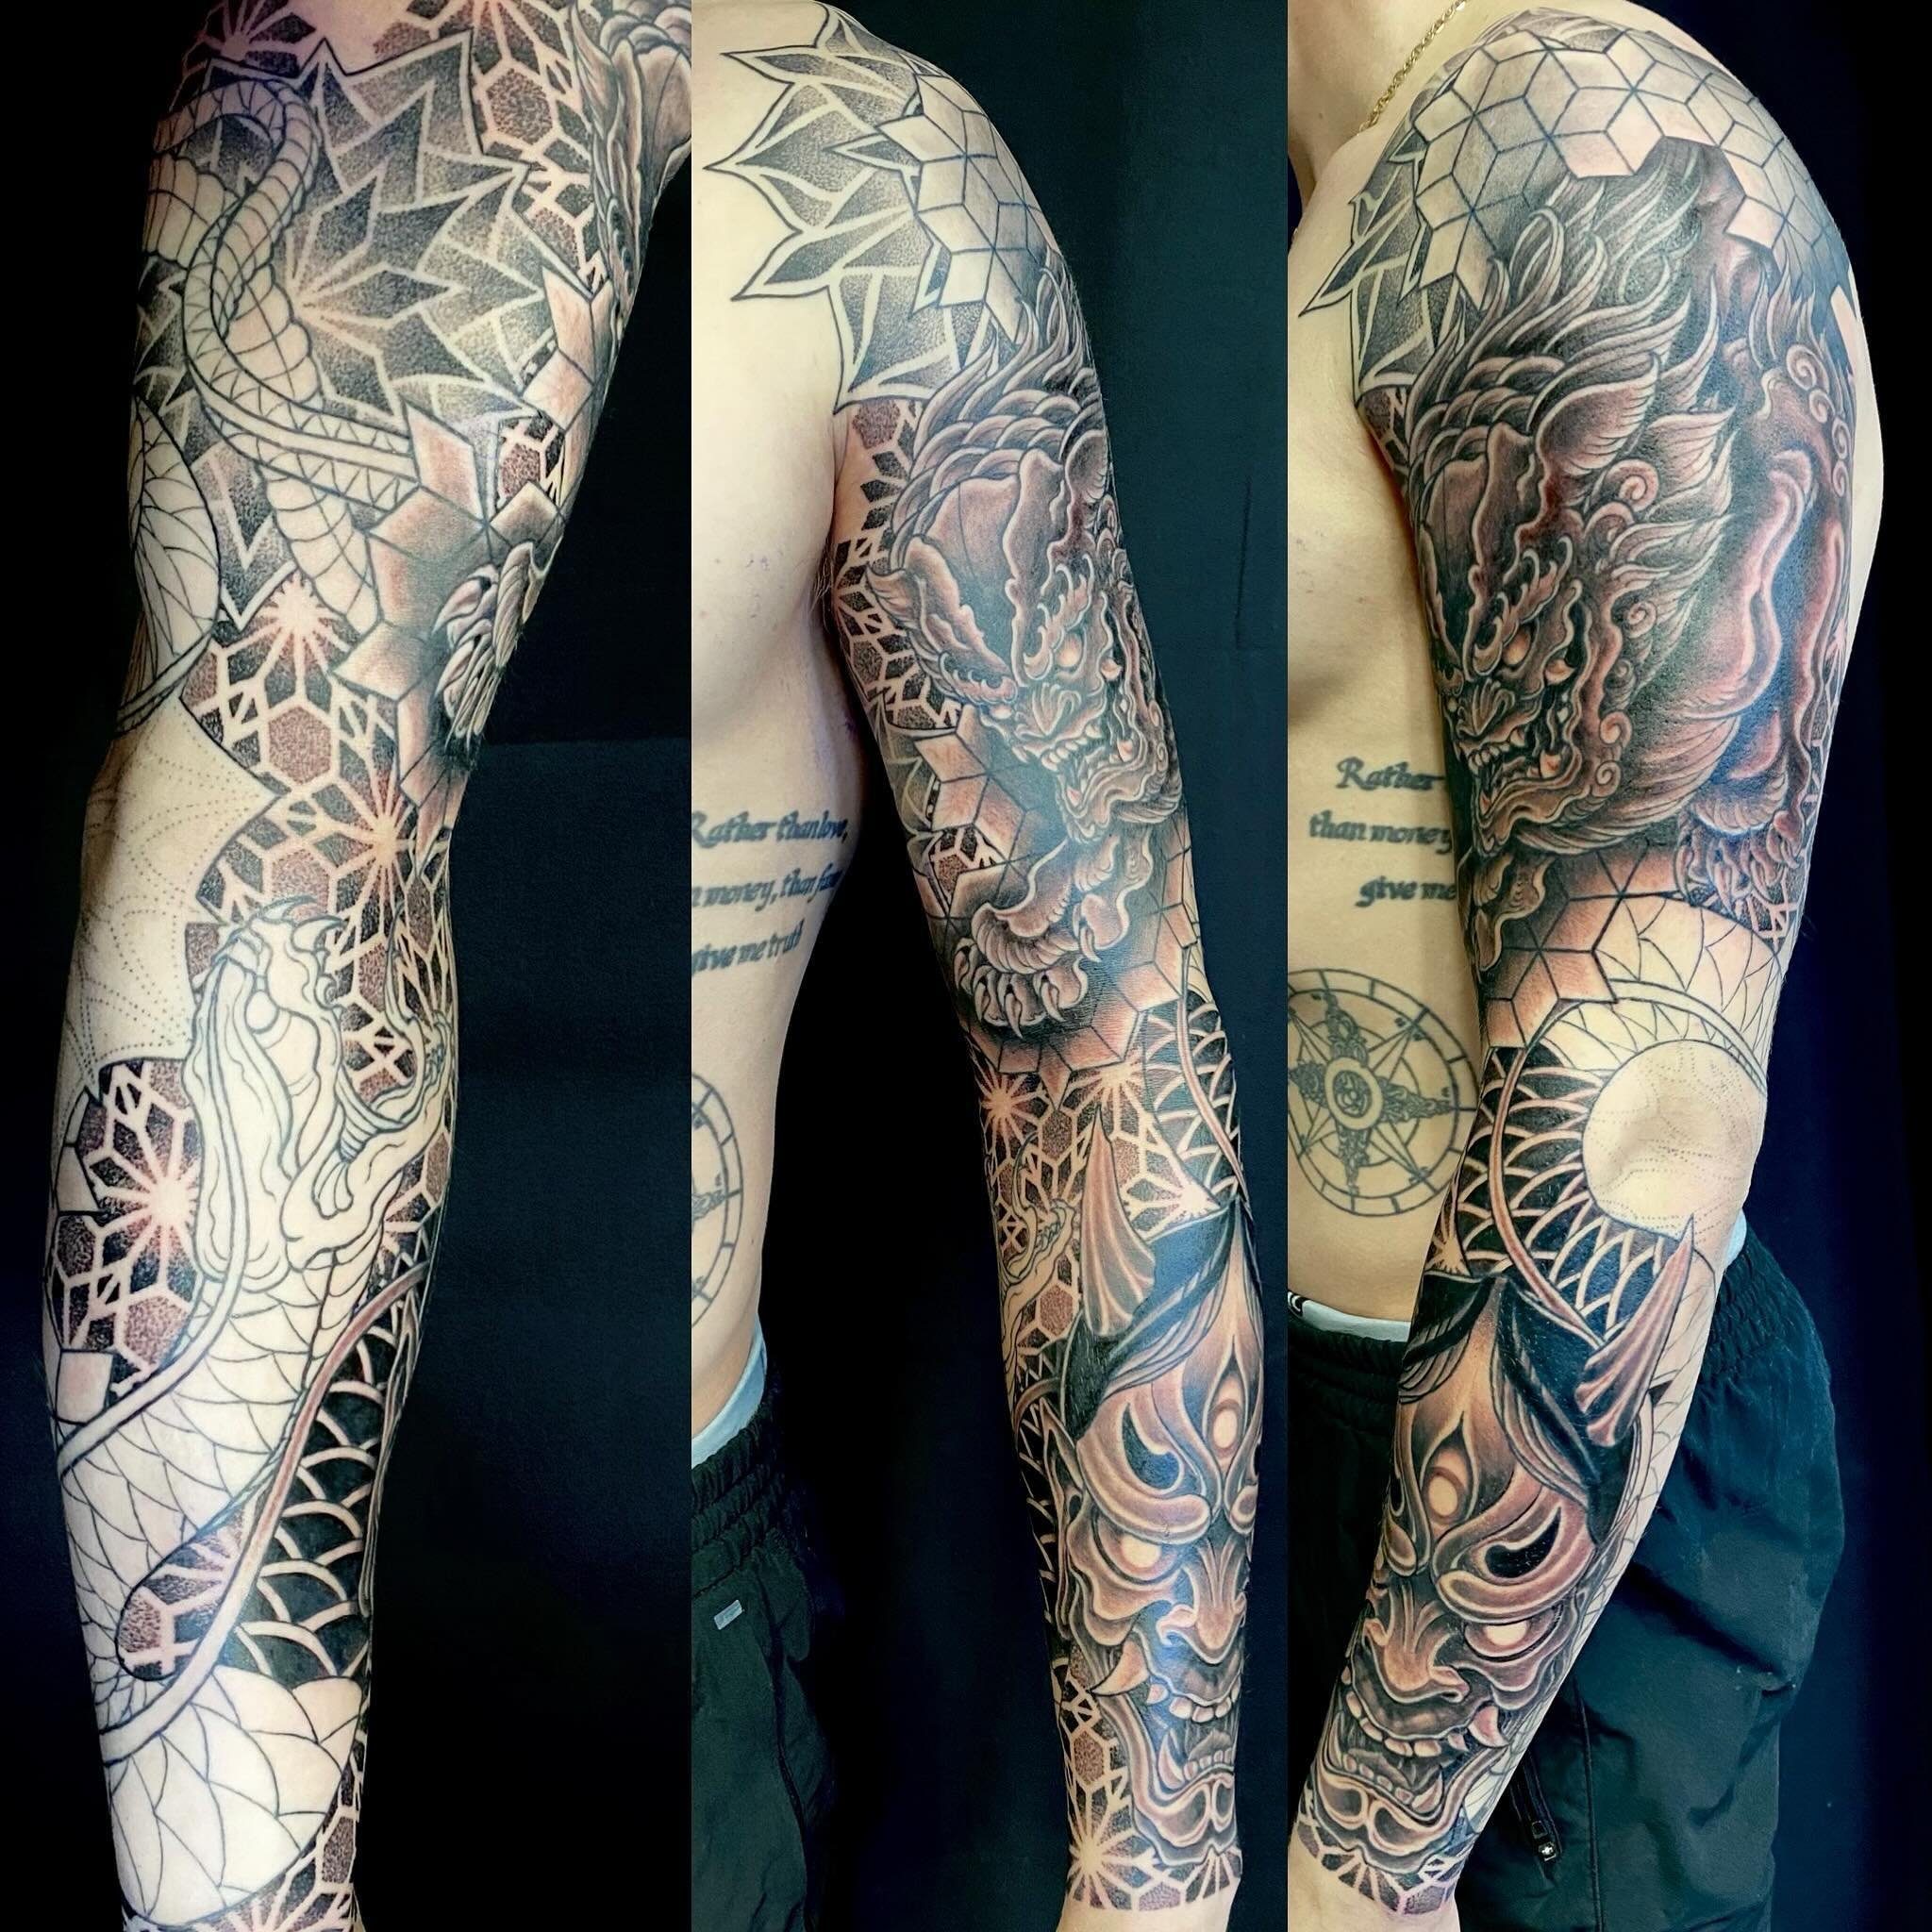 Happy with the progress on this one. 
.
.
.
.
.
.
.
.

#tattoo #tattoos #tattooed #tattooartist #cohenfloch  #victoriatattoo #yyjtattoo #vanisletattoo  #vancouvertattoo #tattoodo  #inked #刺青 #tattooworkers #tattoolife